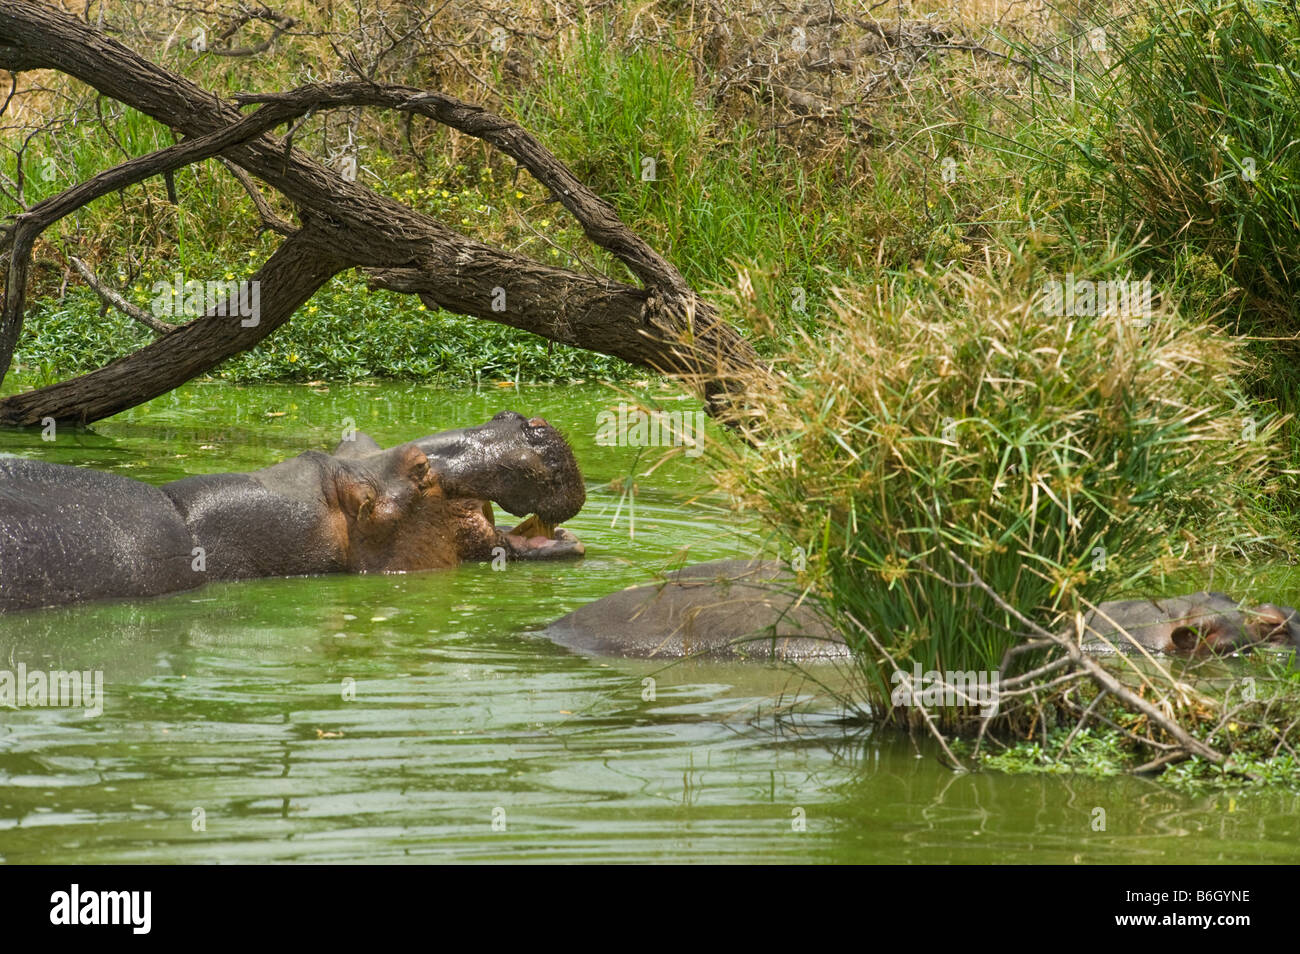 L'état sauvage des animaux Hippopotame amphibie d'hippopotame dans l'eau point d'eau au sud-Afrika afrique du sud baignoire Bain ambiance panorama vert Banque D'Images